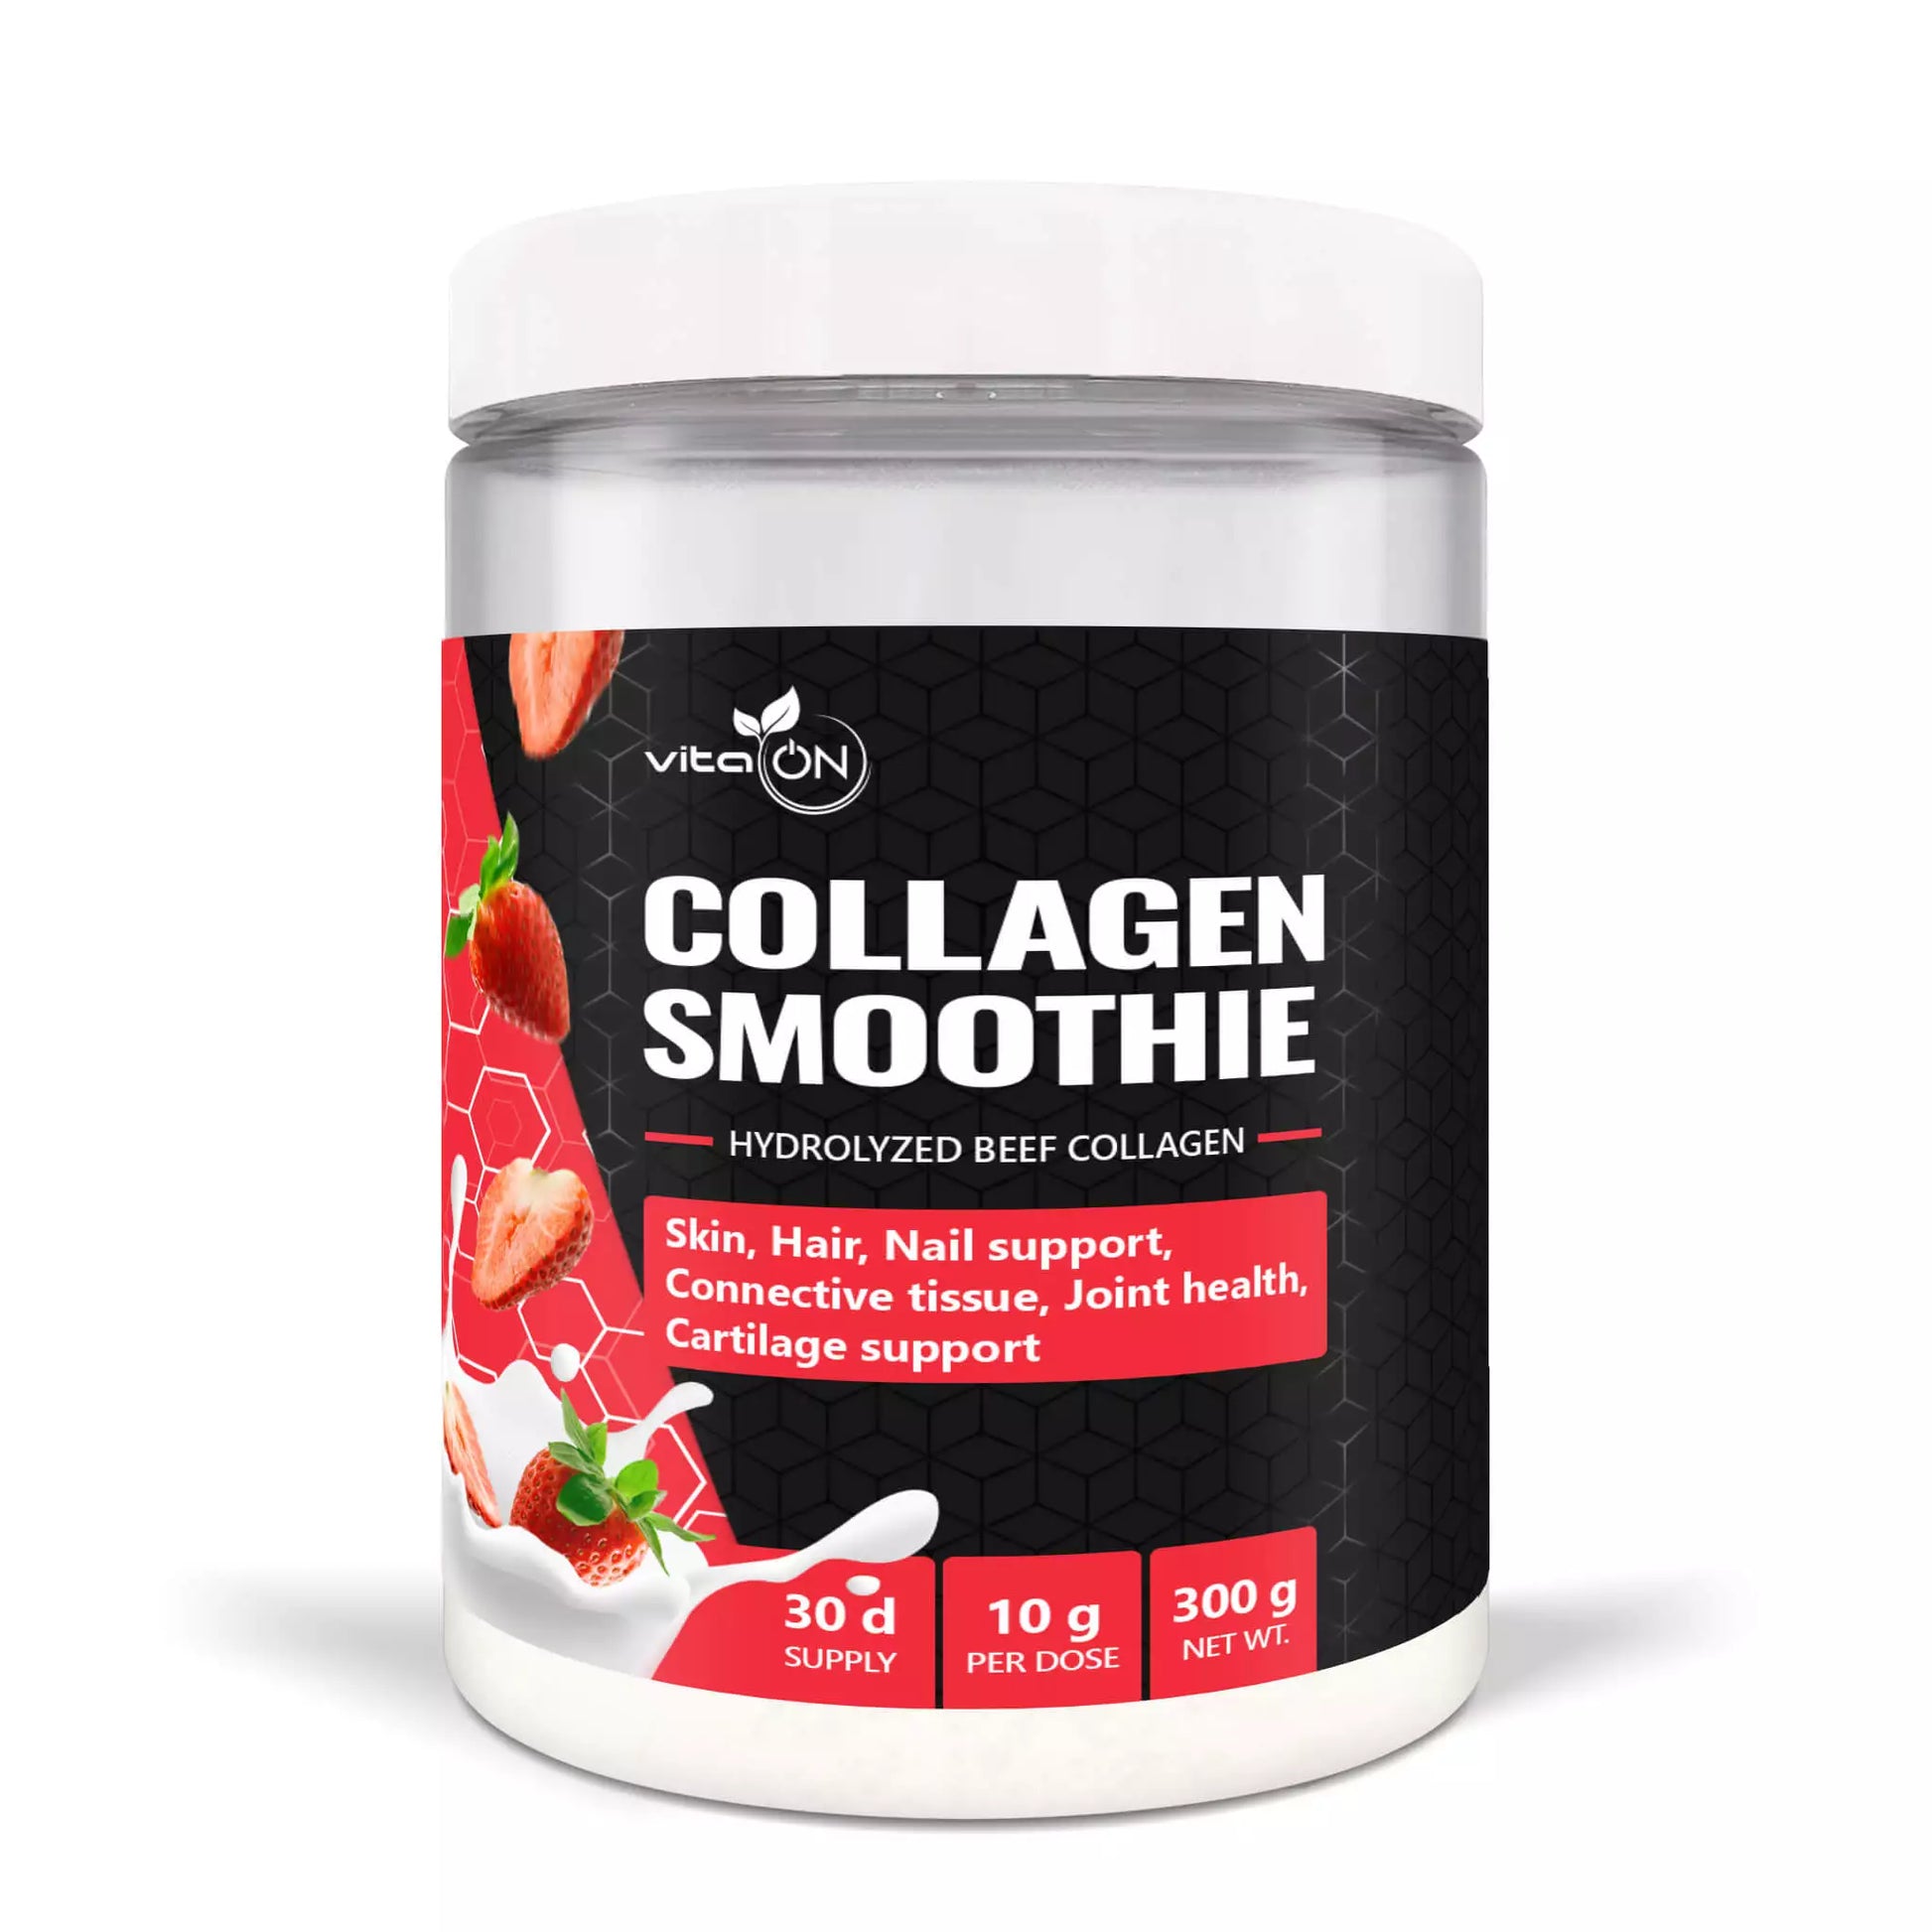 Collagen Smoothie - źródło hydrolizowanego kolagenu, zapewniające zdrową tkankę łączną, zdrowe stawy, włosy i skórę.